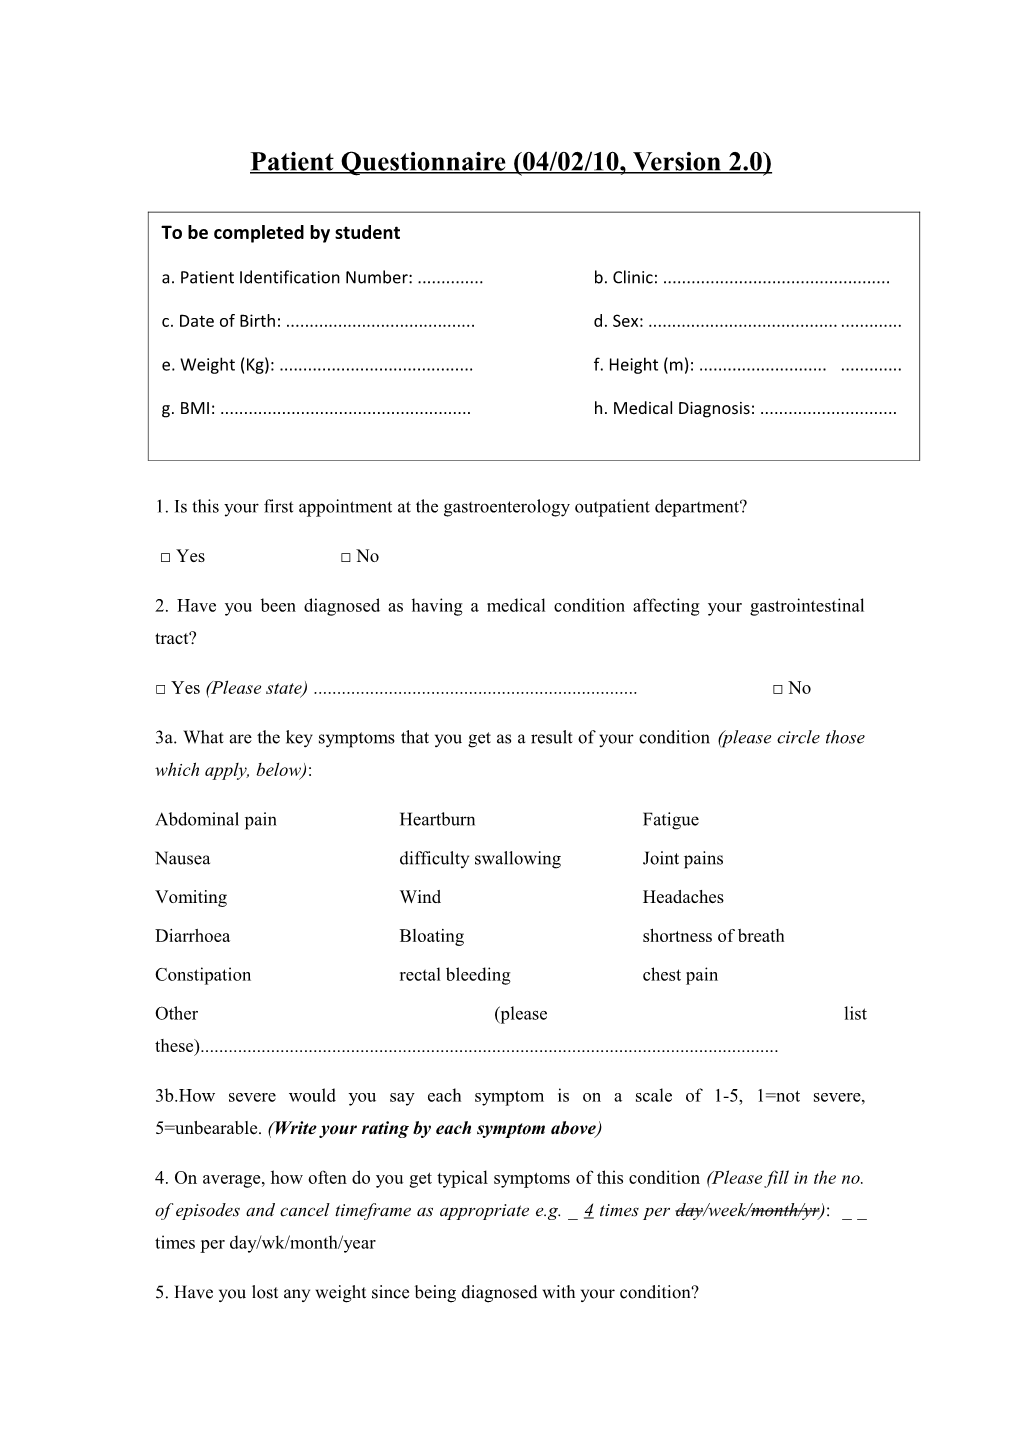 Patient Questionnaire (04/02/10, Version 2.0)